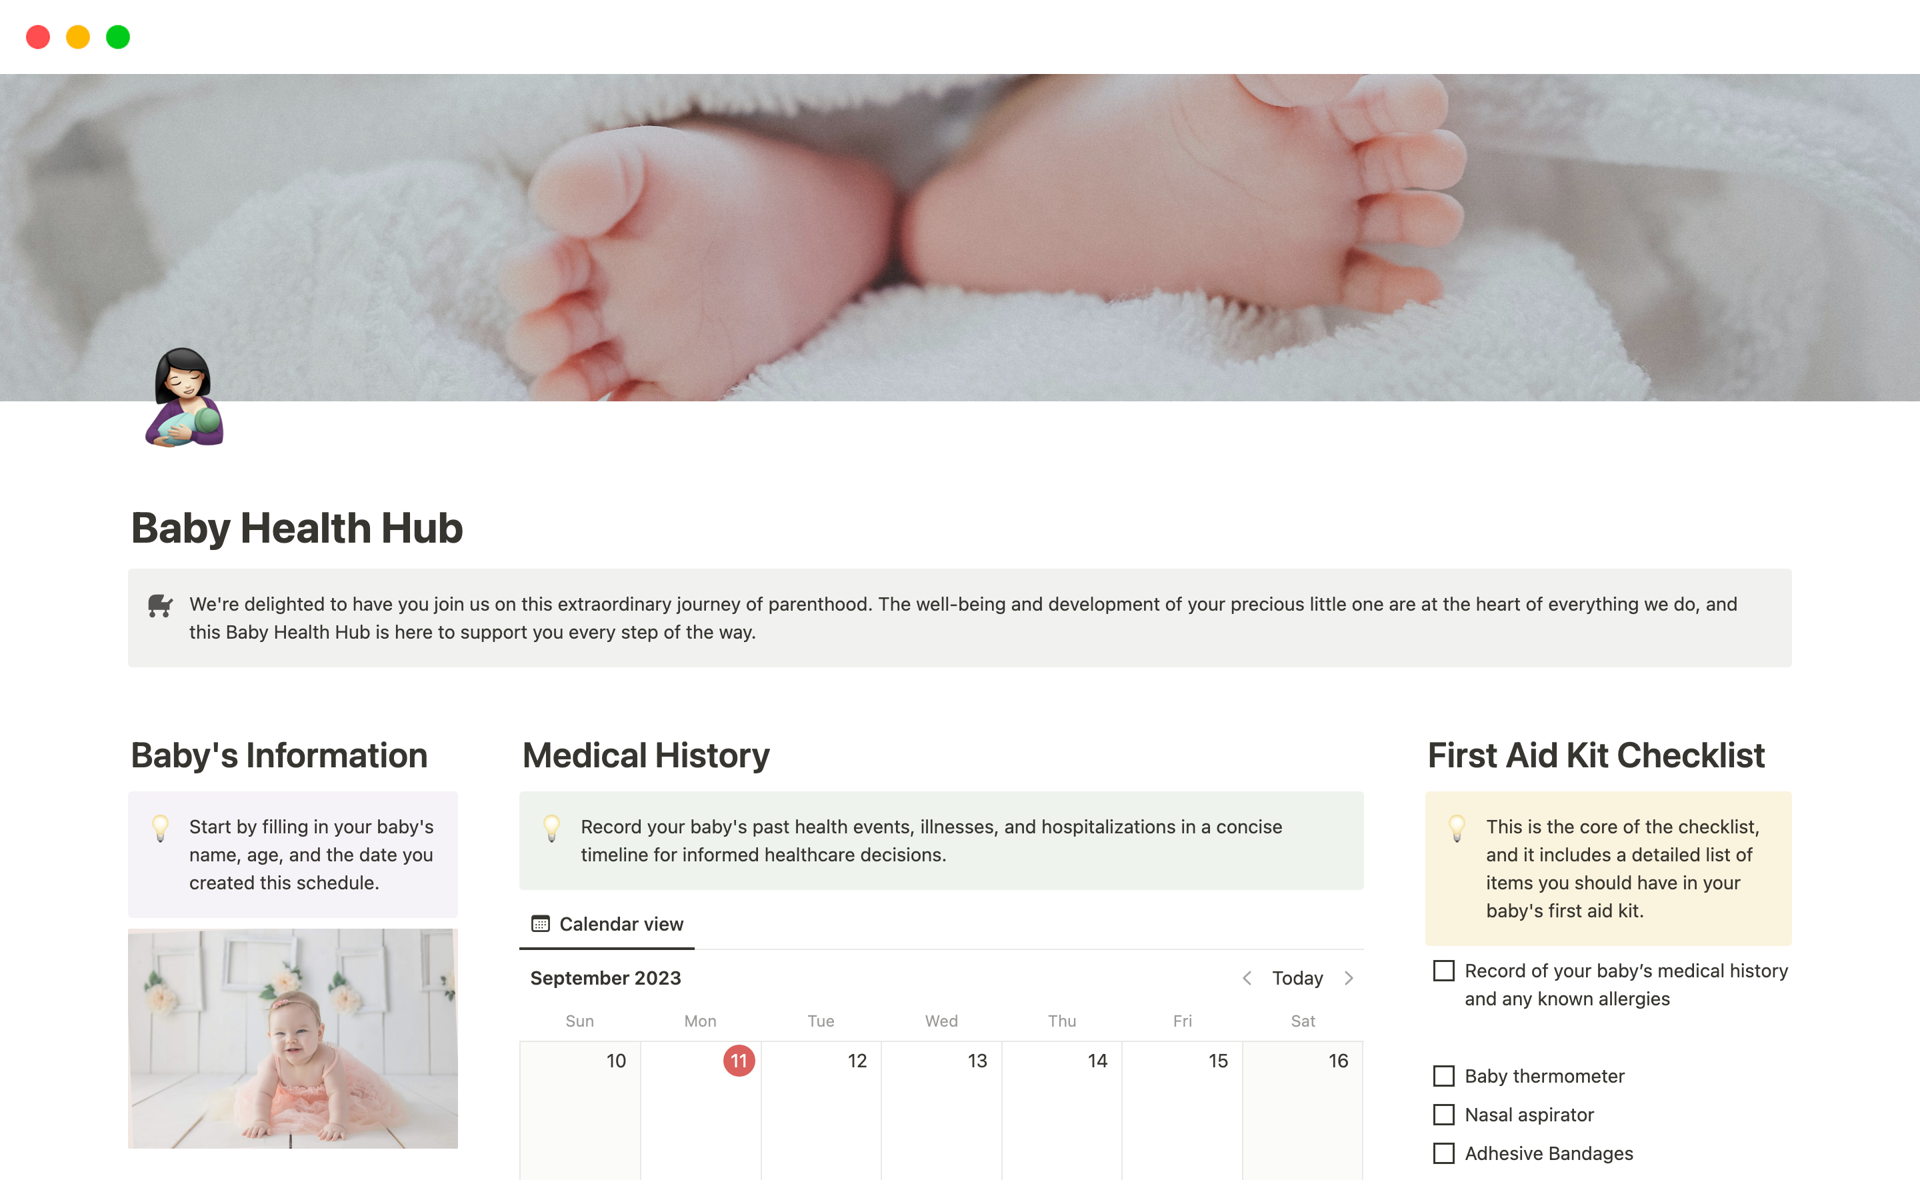 Aperçu du modèle de Baby Health Hub